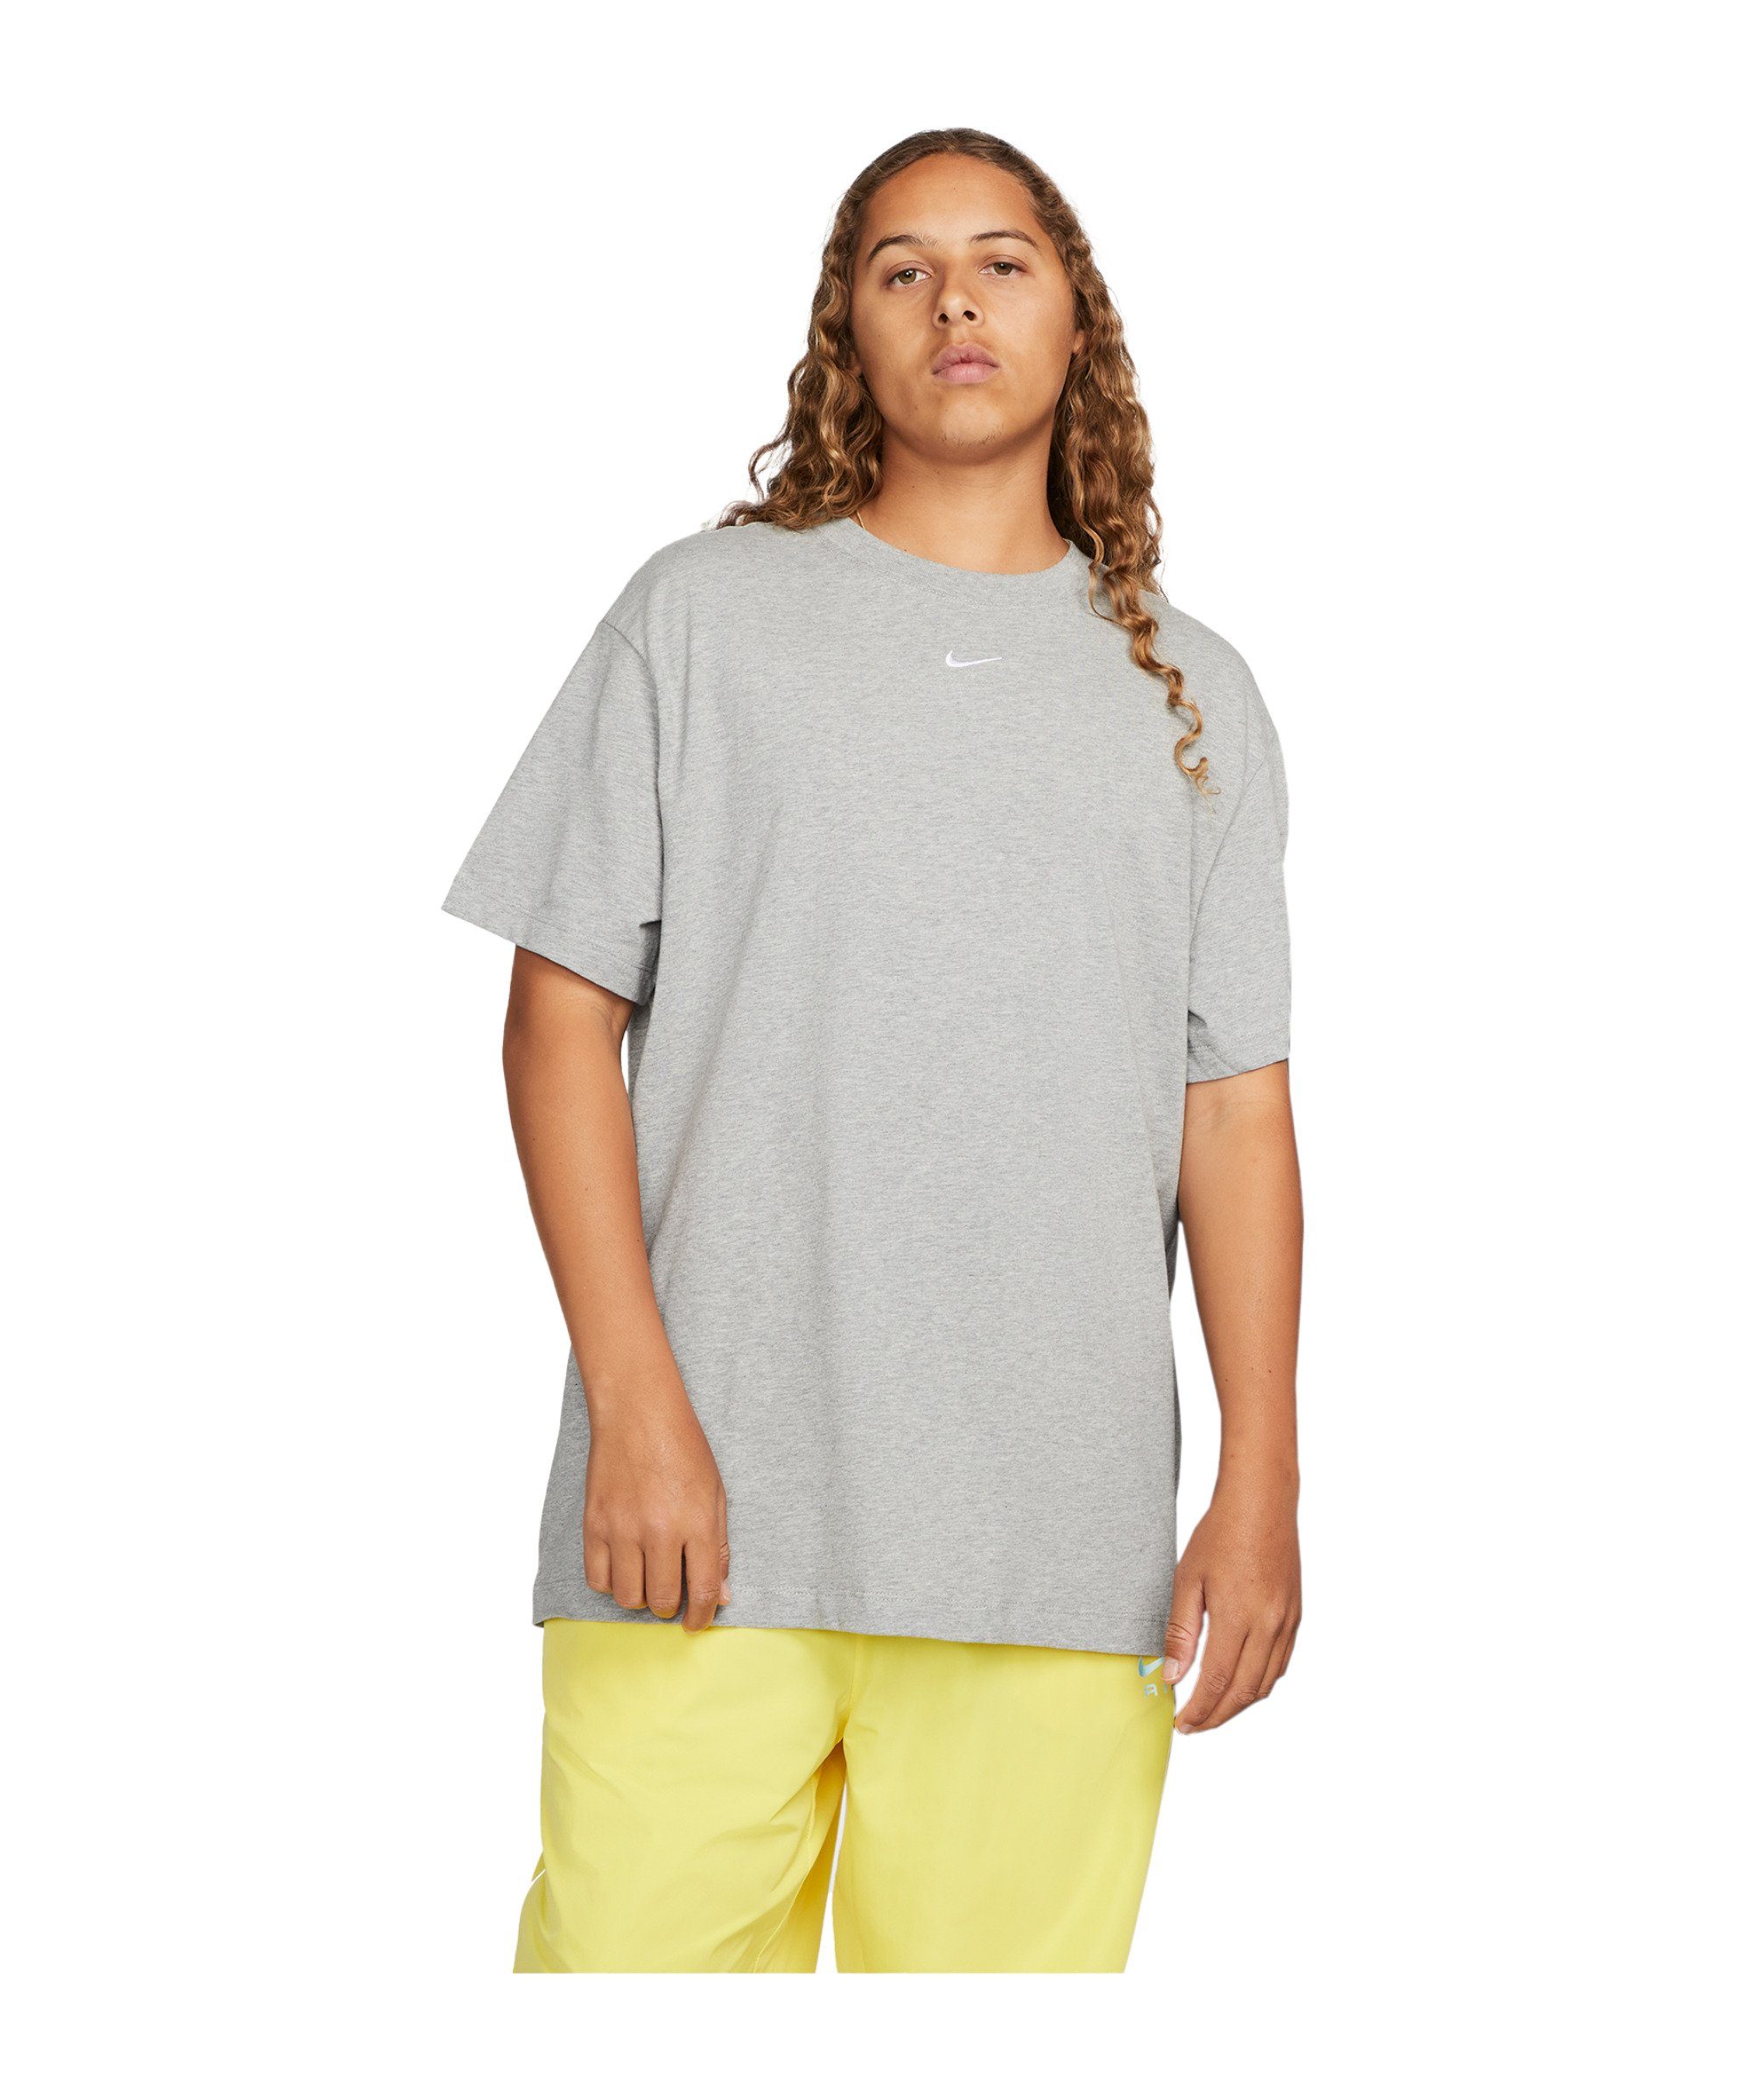 grauweiss T-Shirt default Sportswear Nike Damen T-Shirt Essential